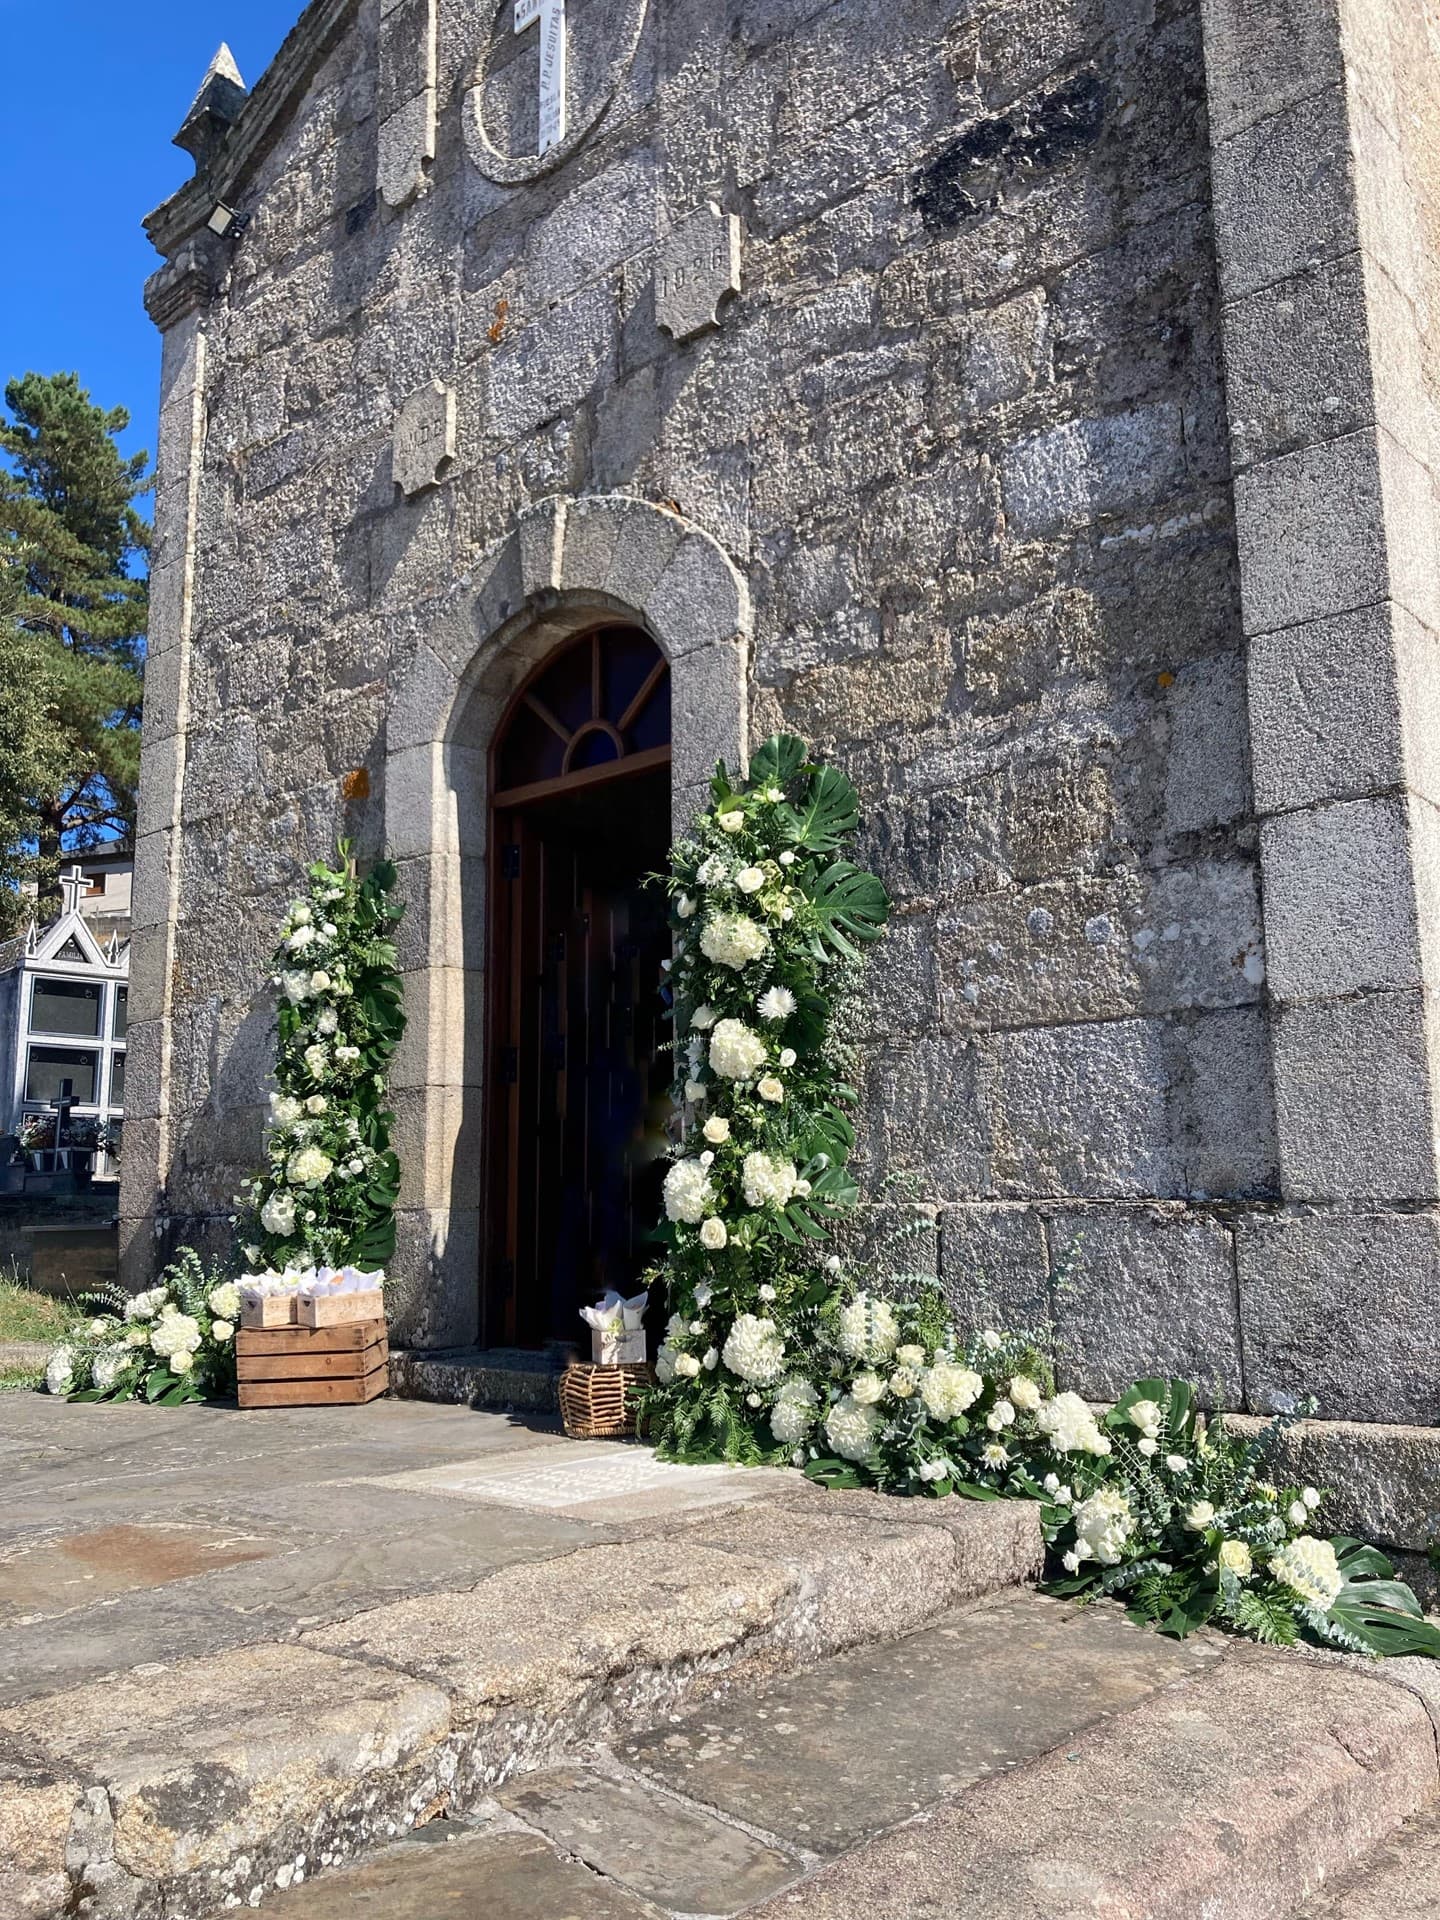 Decoración de bodas en Lugo - Floristería Soriales